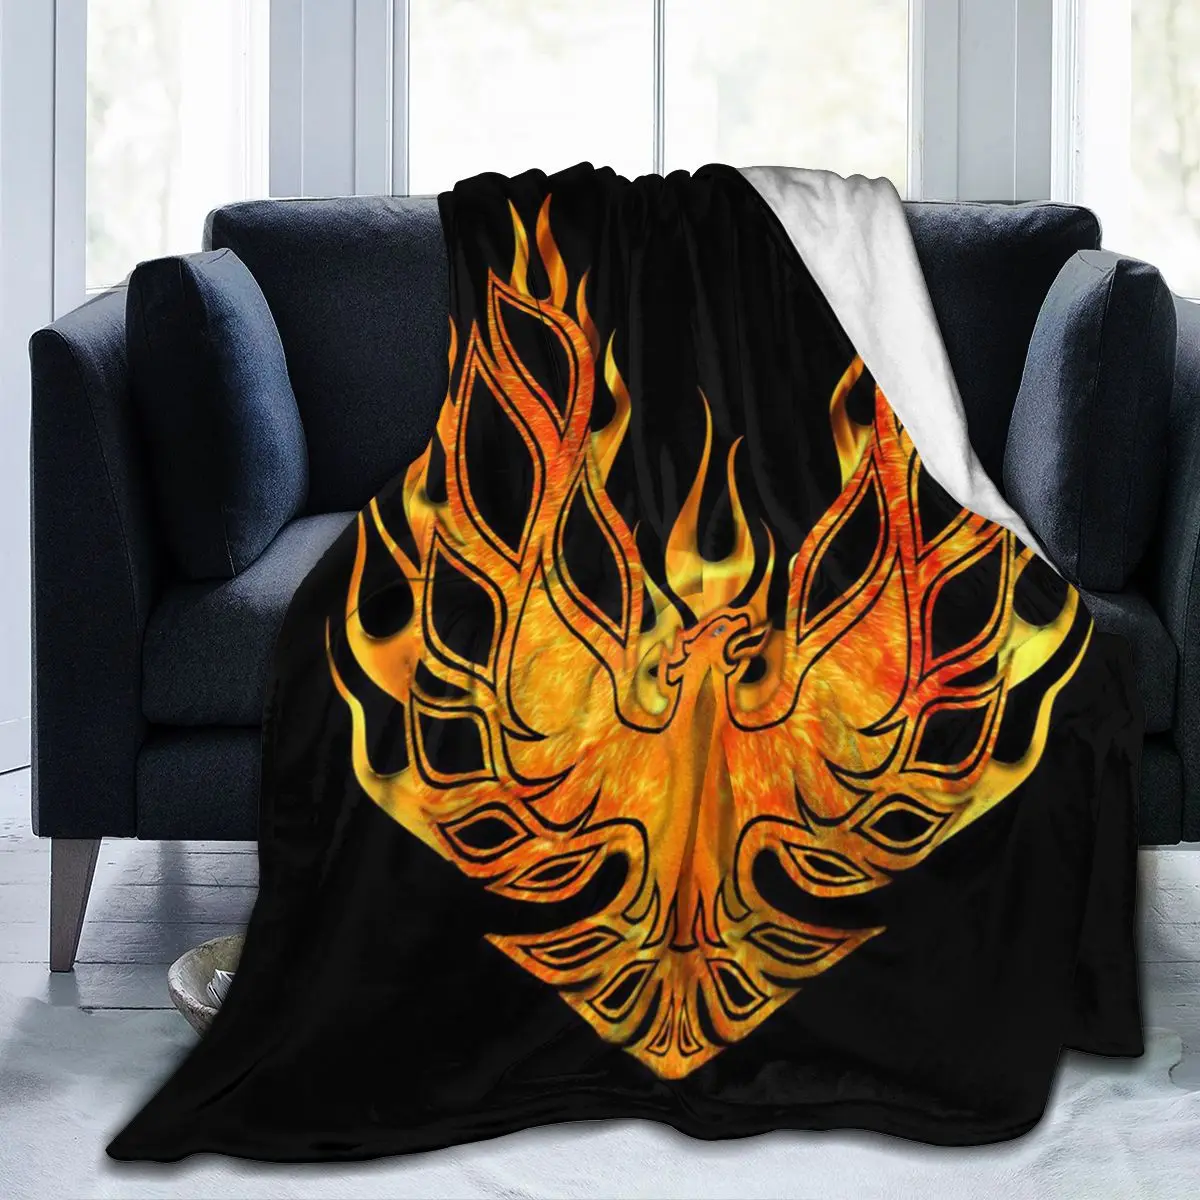 

Одеяло для кровати Pontiac Trans Am FireBird, легкий ультрамягкий флисовый плед, прочное домашнее бархатное покрывало для дивана